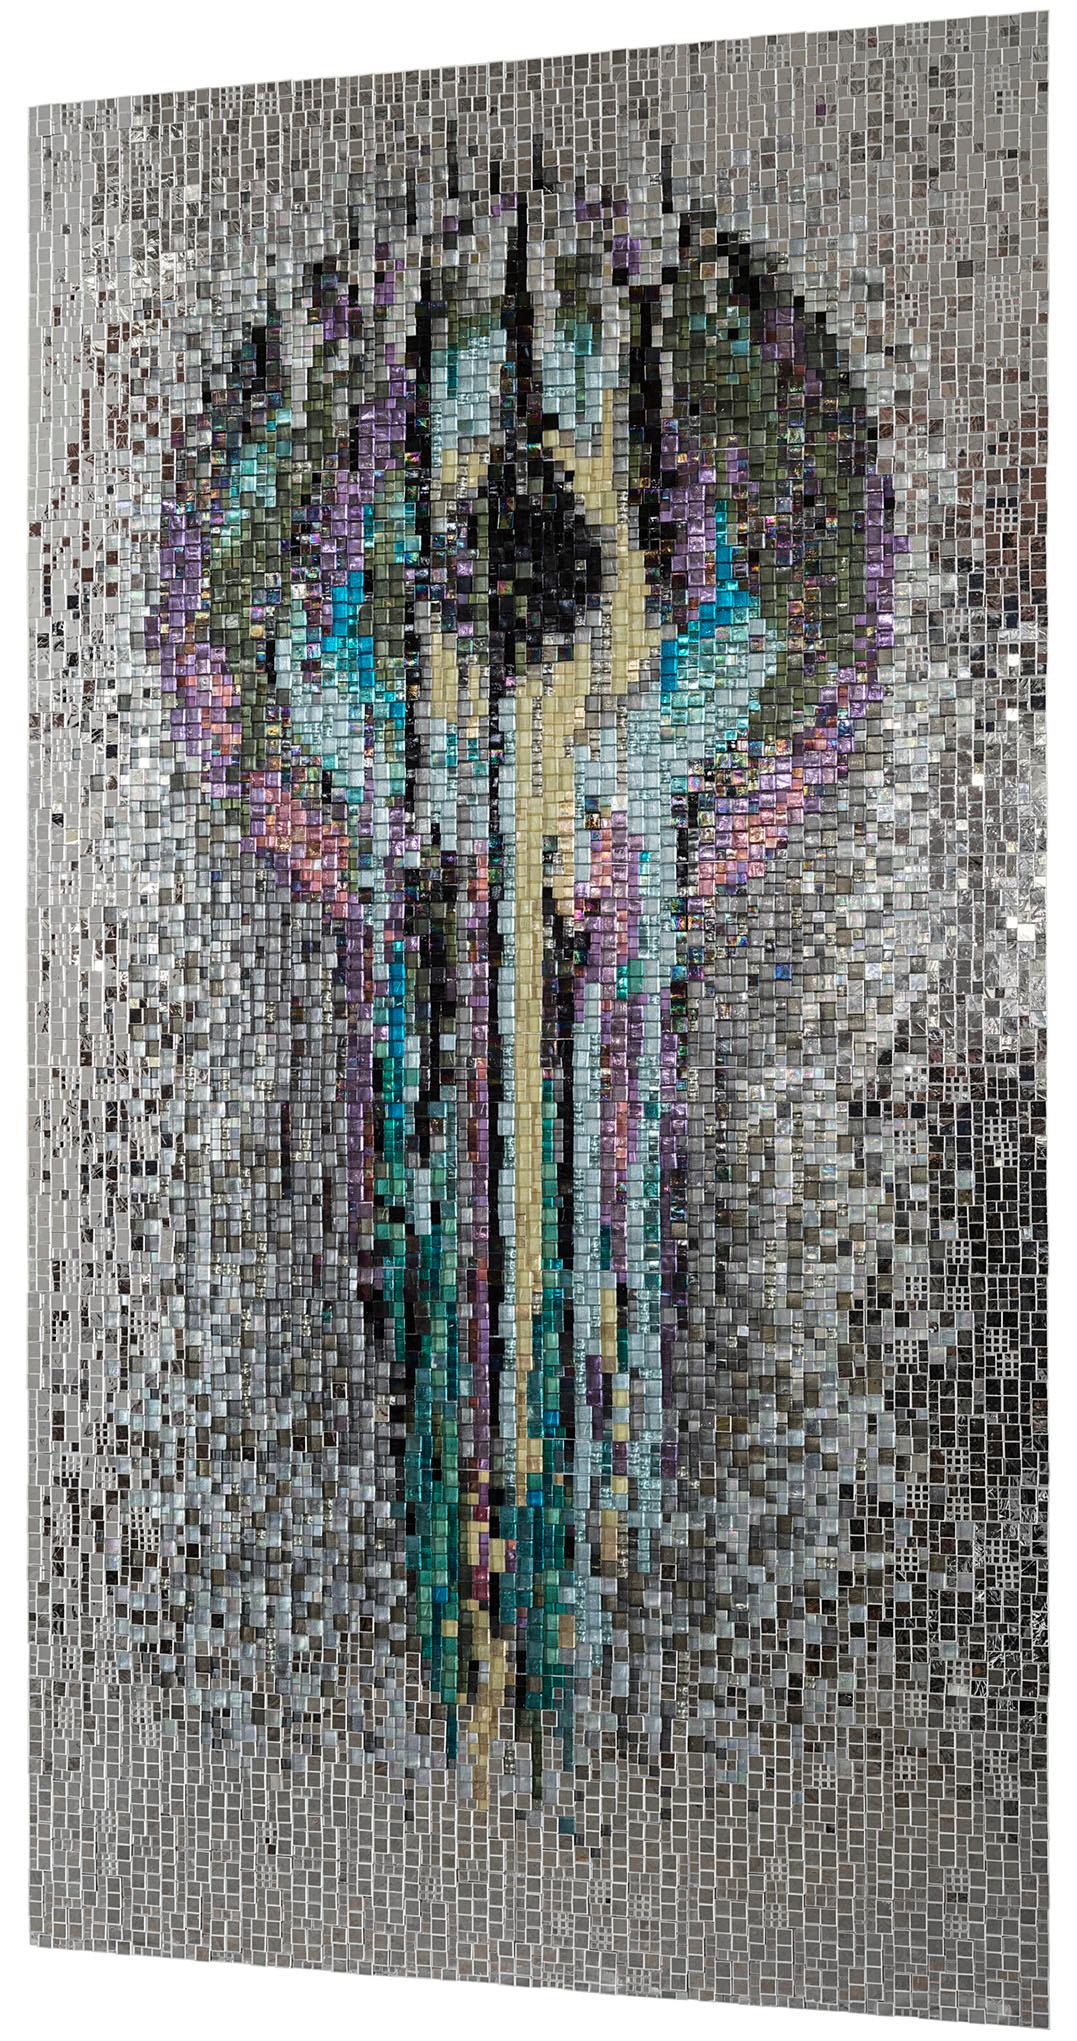 Die Herstellung eines künstlerischen Mosaiks, ein Design von unvergleichlicher Schönheit, die Erfindung des Tromp l'oeil